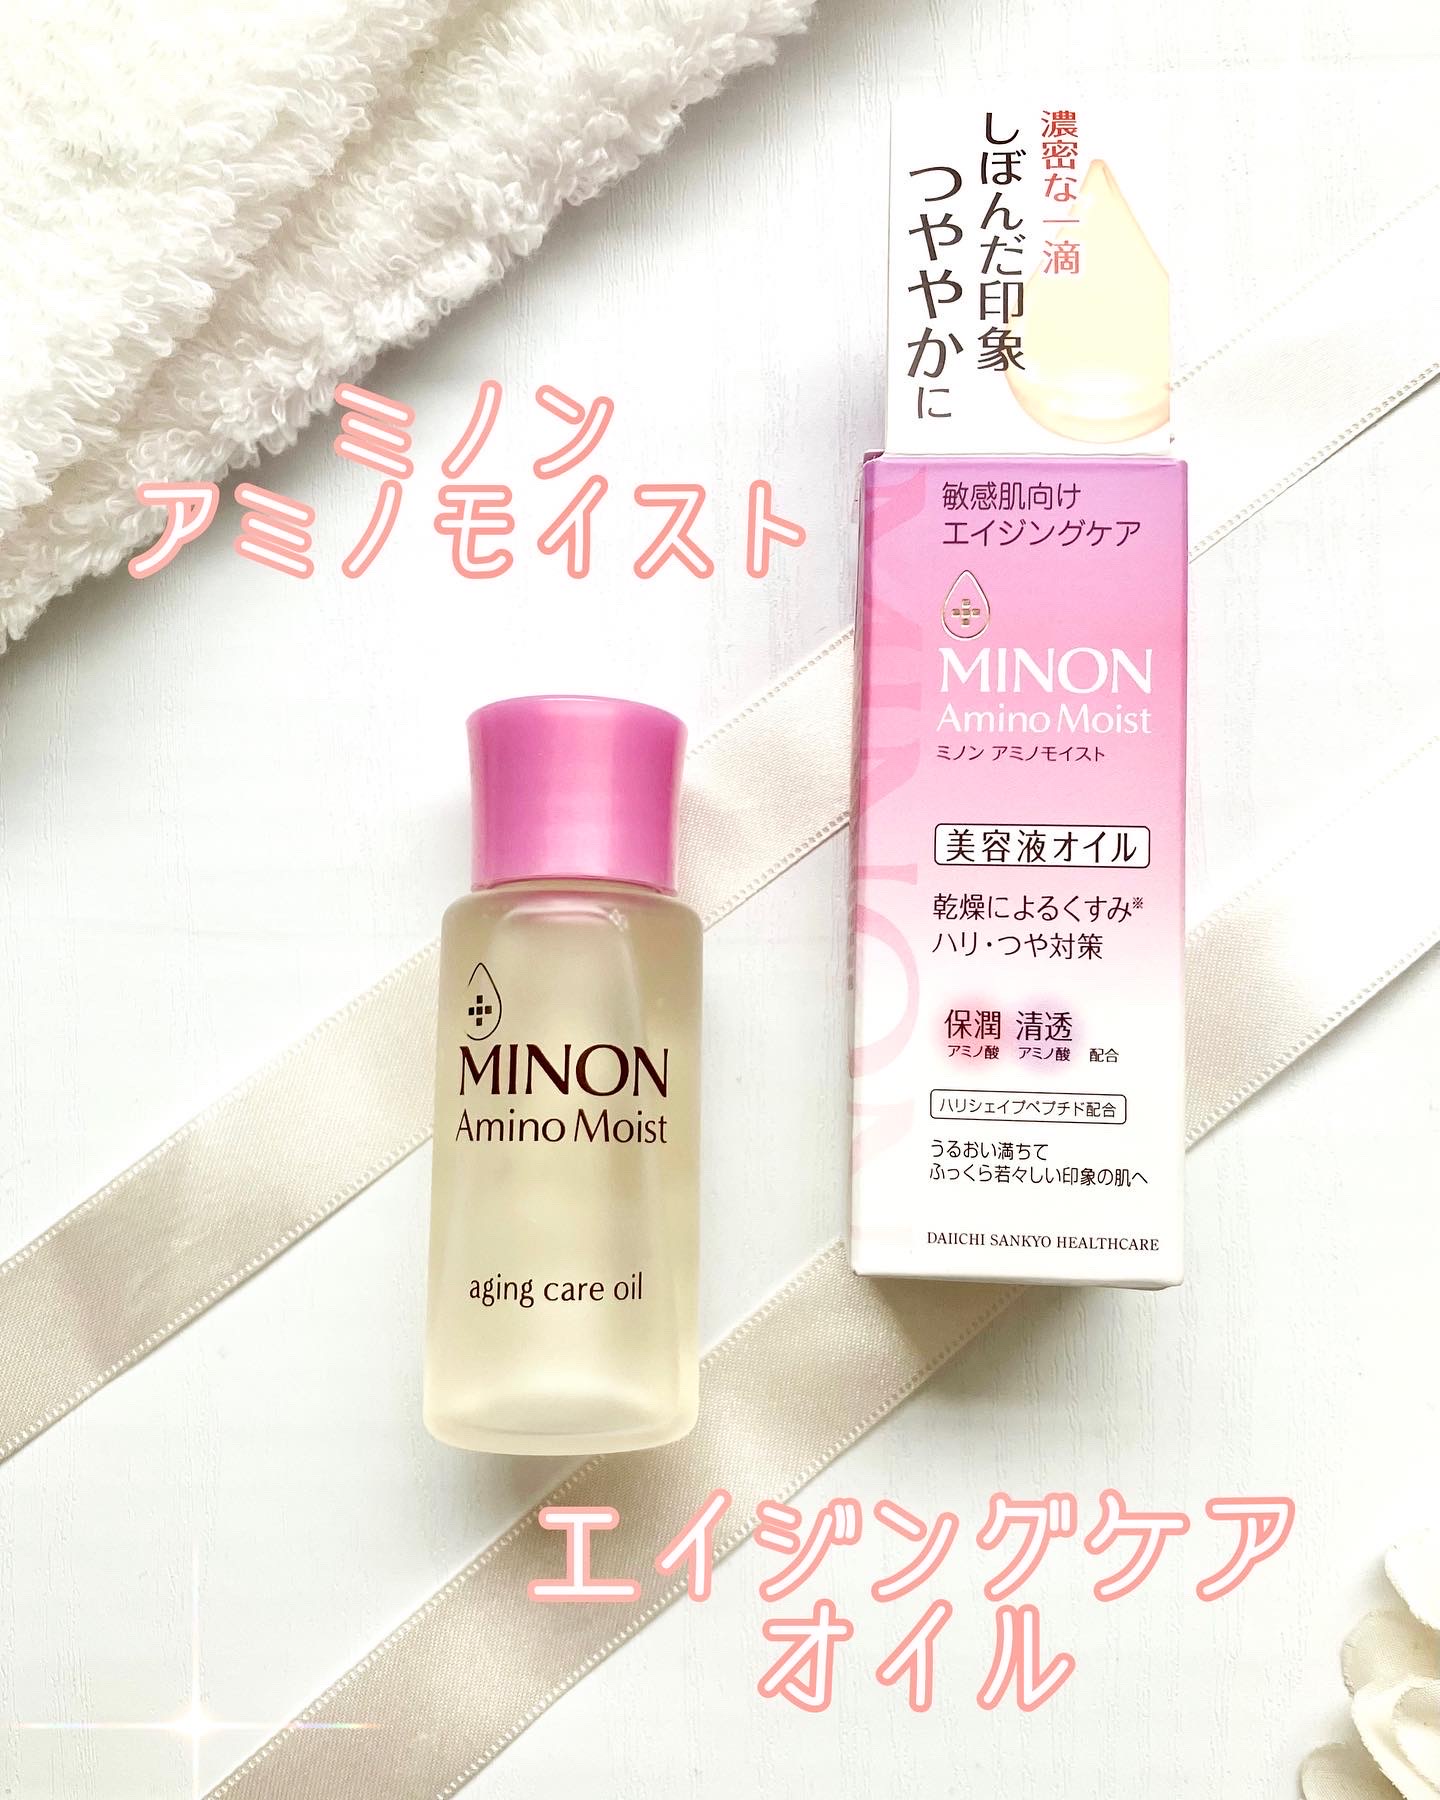 ミノン アミノモイスト エイジングケア オイル 美容液オイル - 基礎化粧品